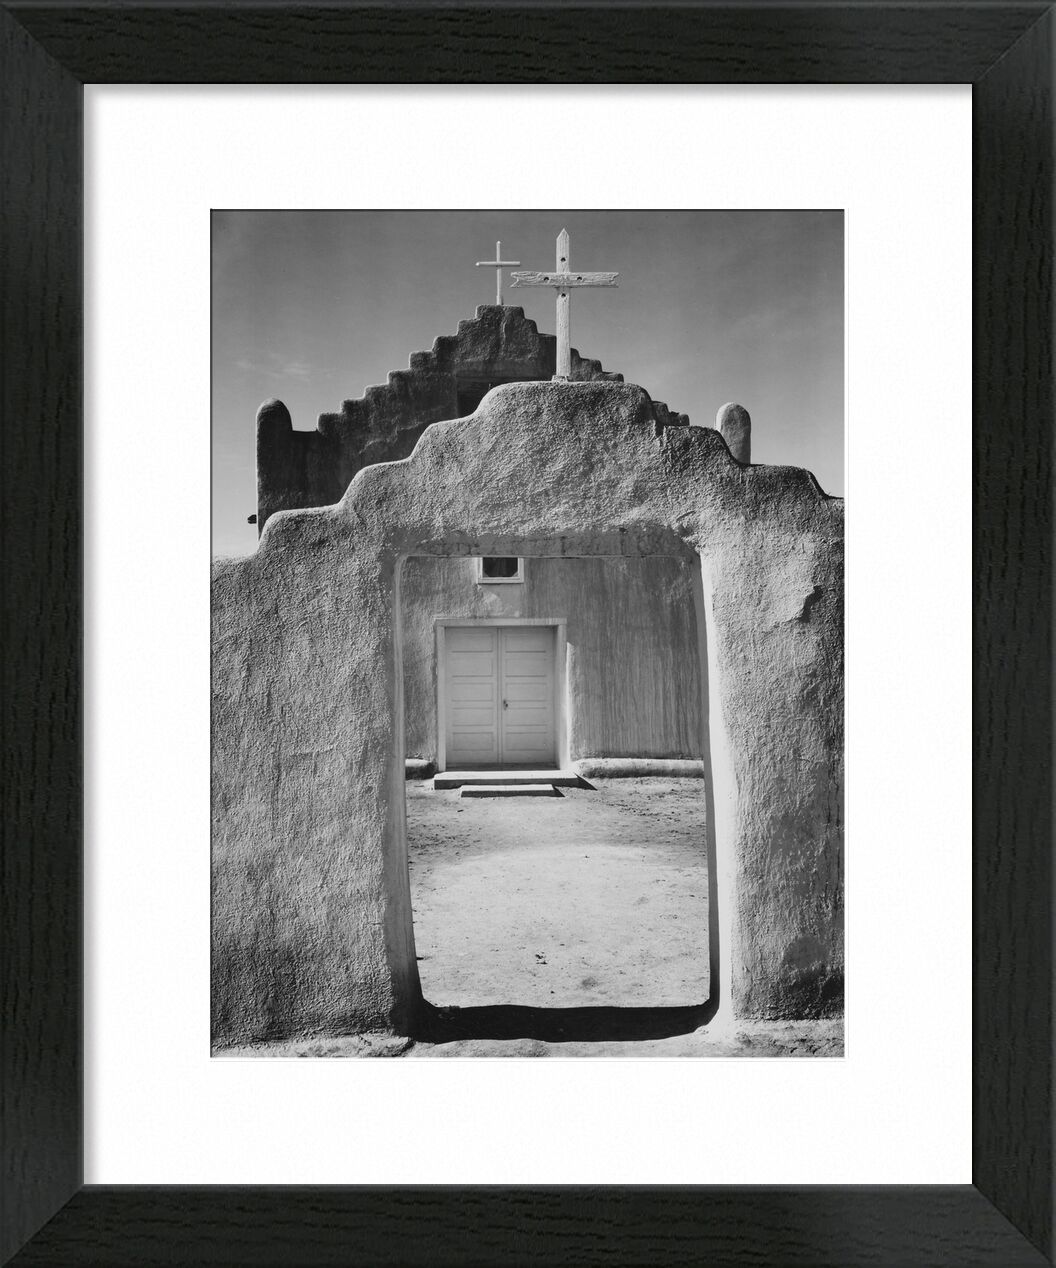 Church Taos pueblo, New Mexico - ANSEL ADAMS 1942 desde Bellas artes, Prodi Art, iglesia, entrada, mensaje, blanco y negro, ANSEL ADAMS, puerta